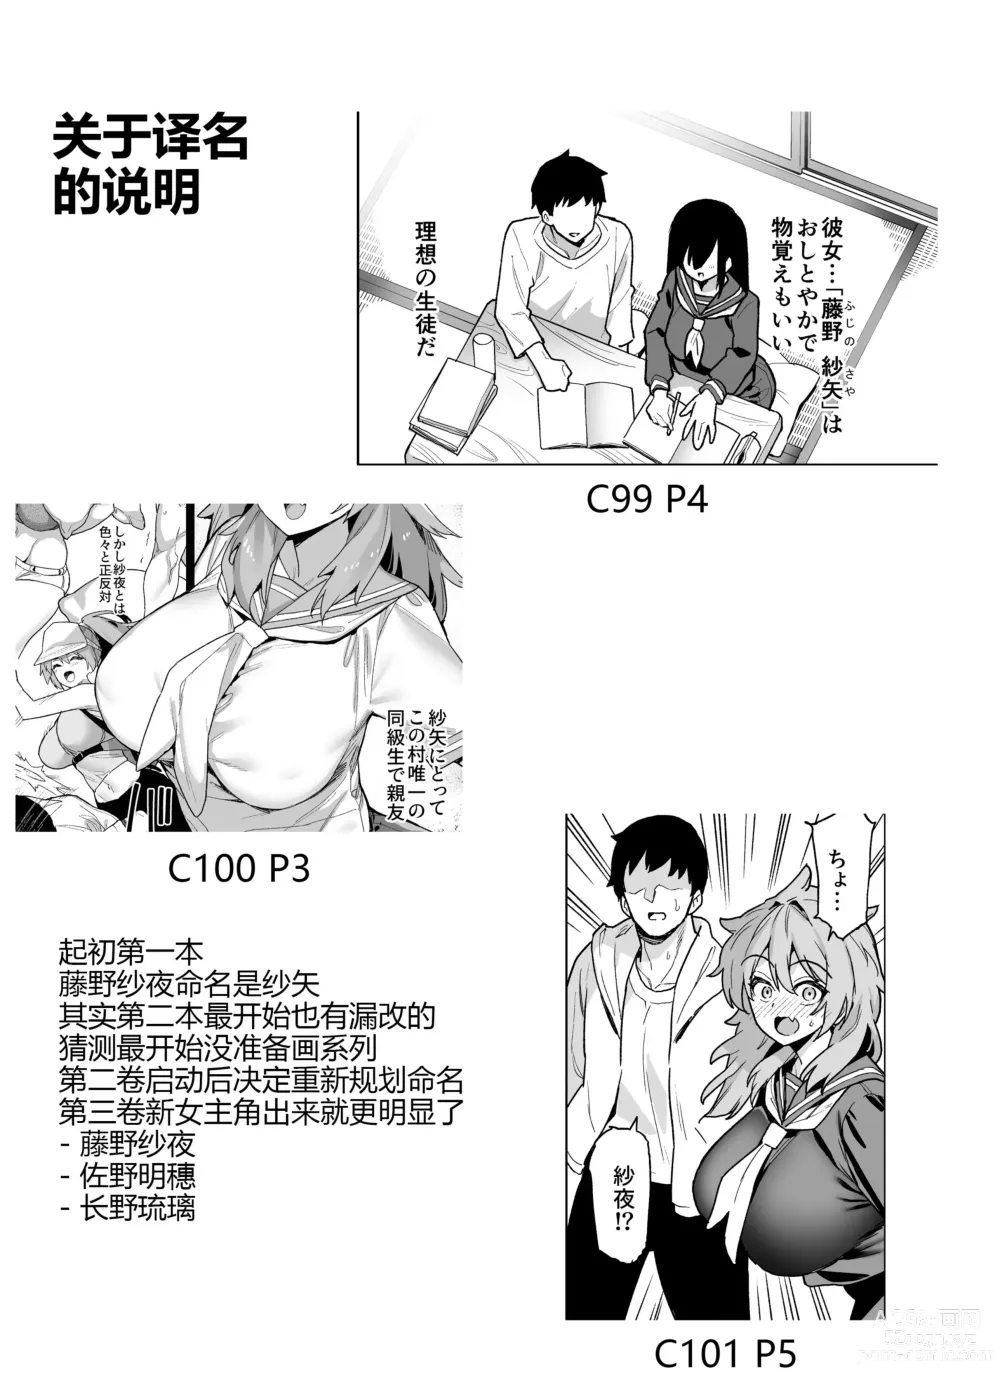 Page 140 of doujinshi Inaka Goraku 1-3